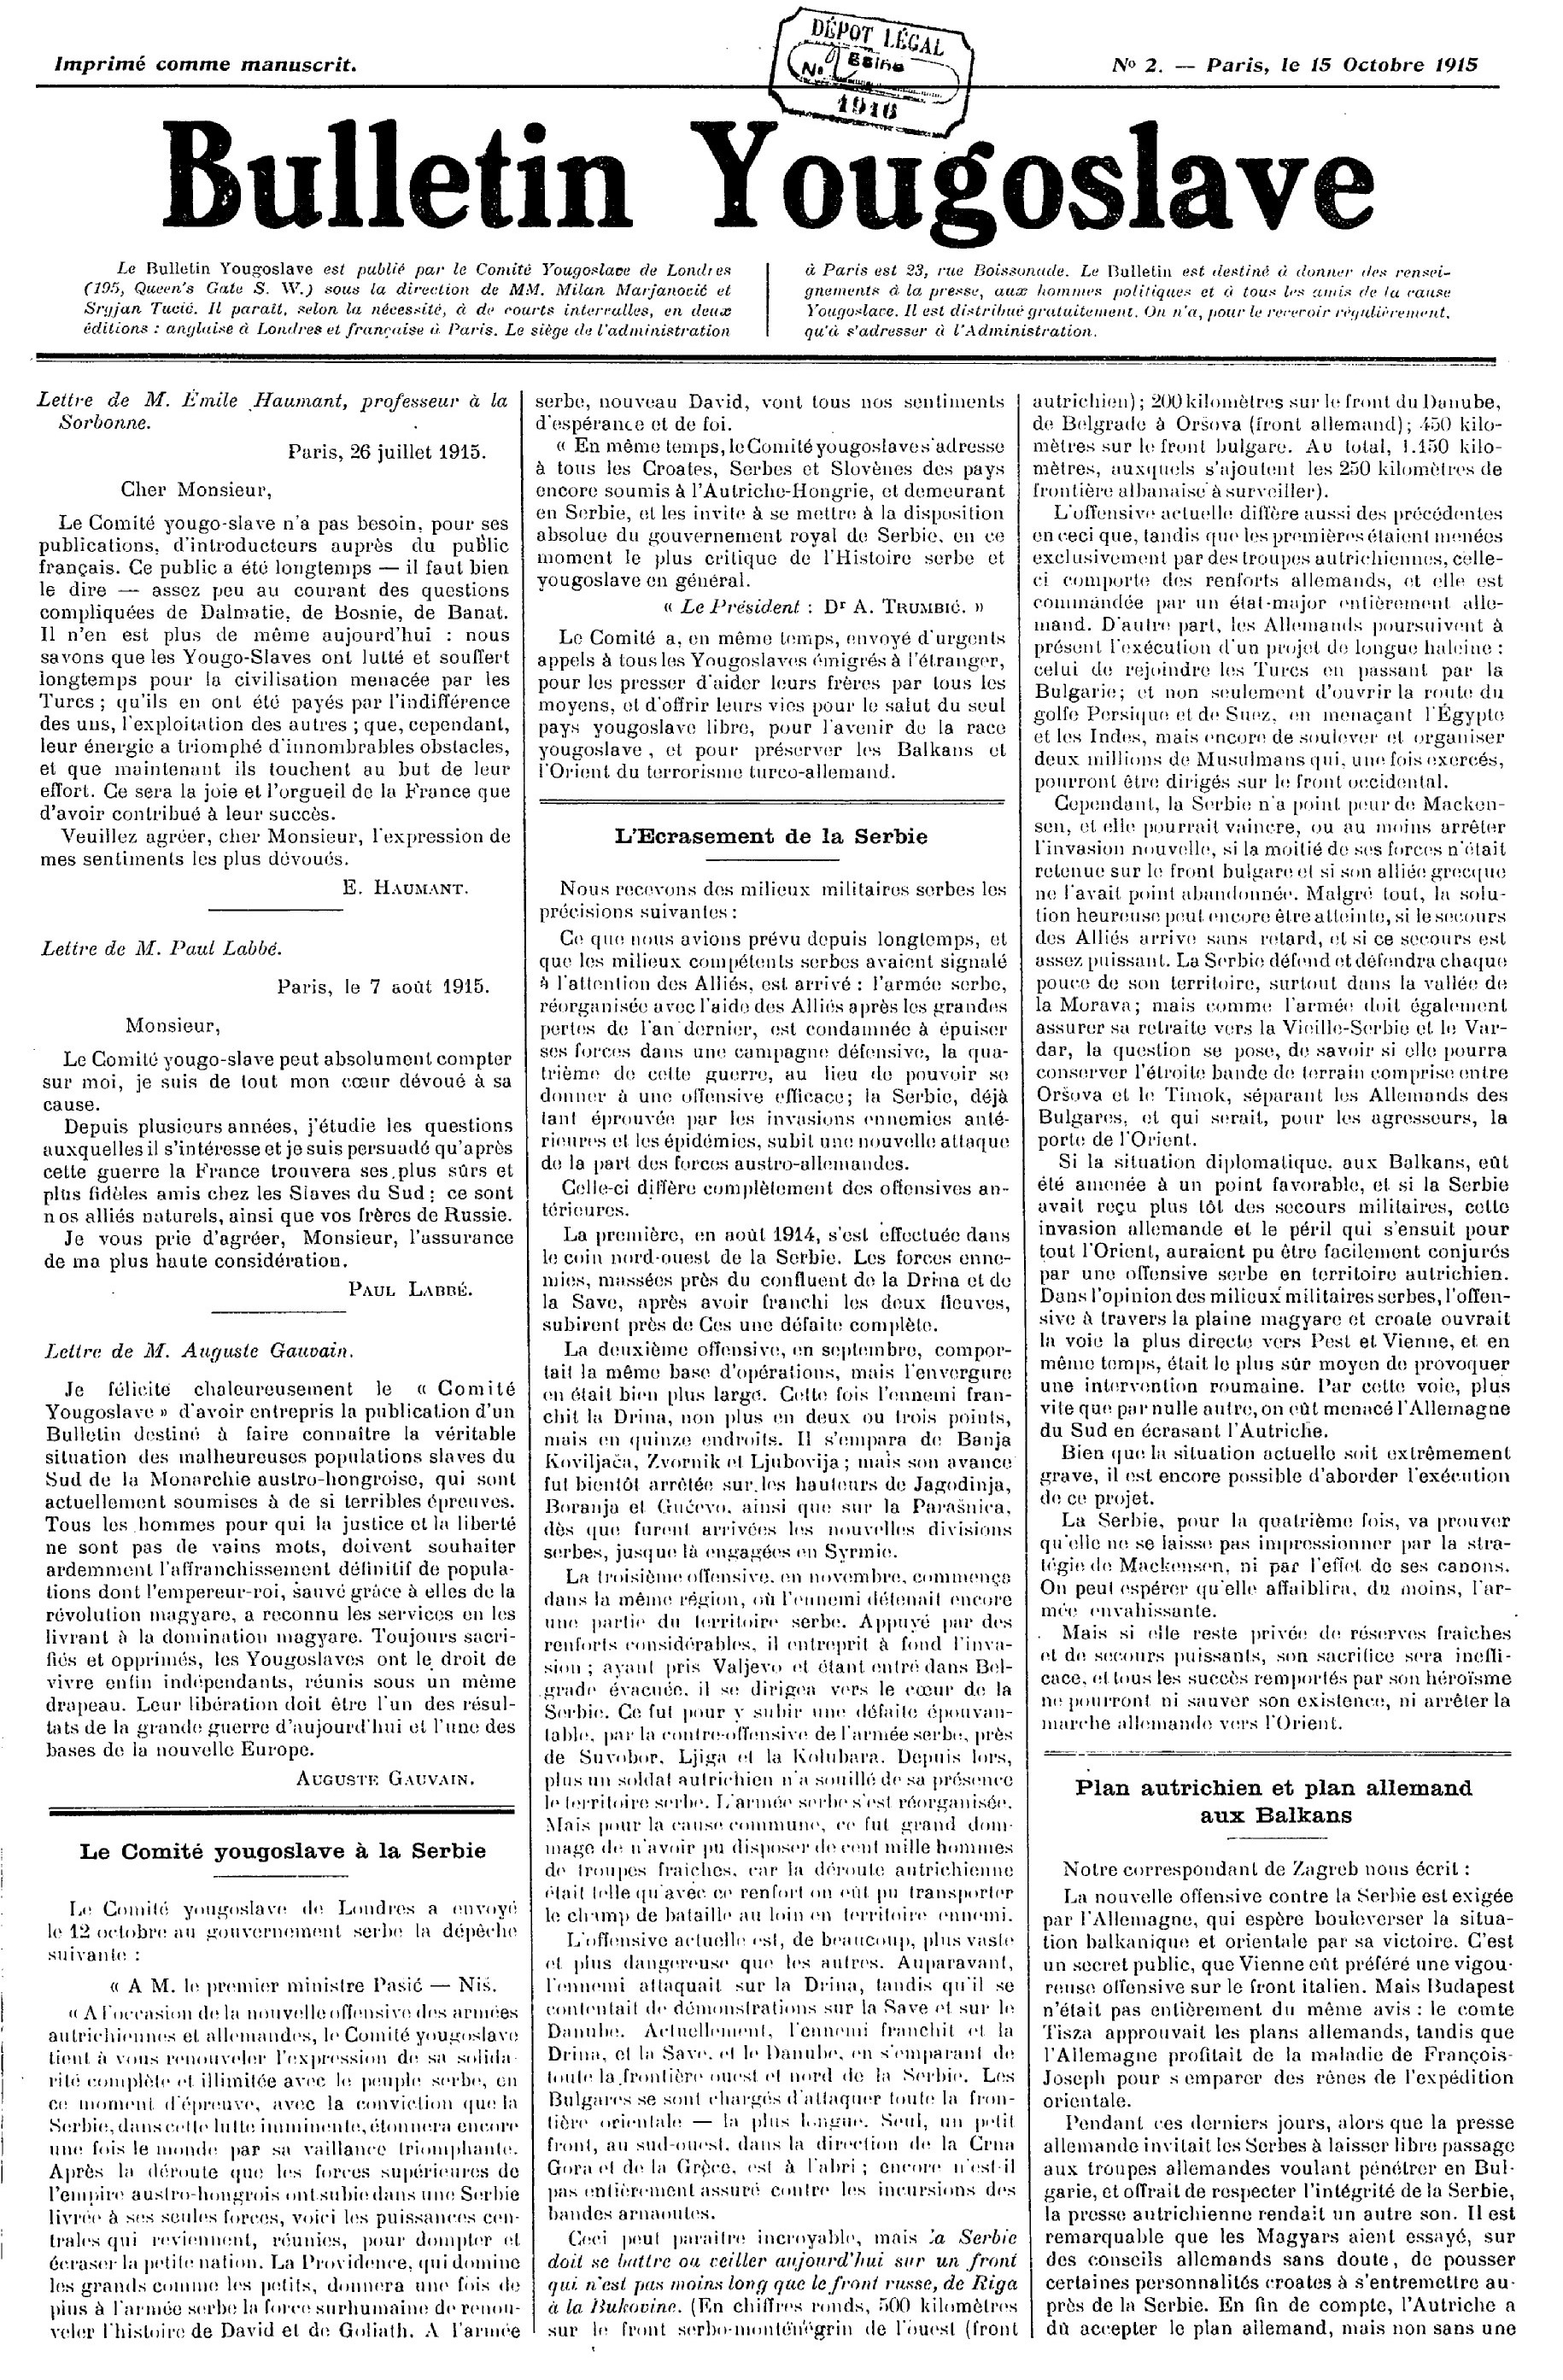 Bulletin yougoslave (1915-1918)